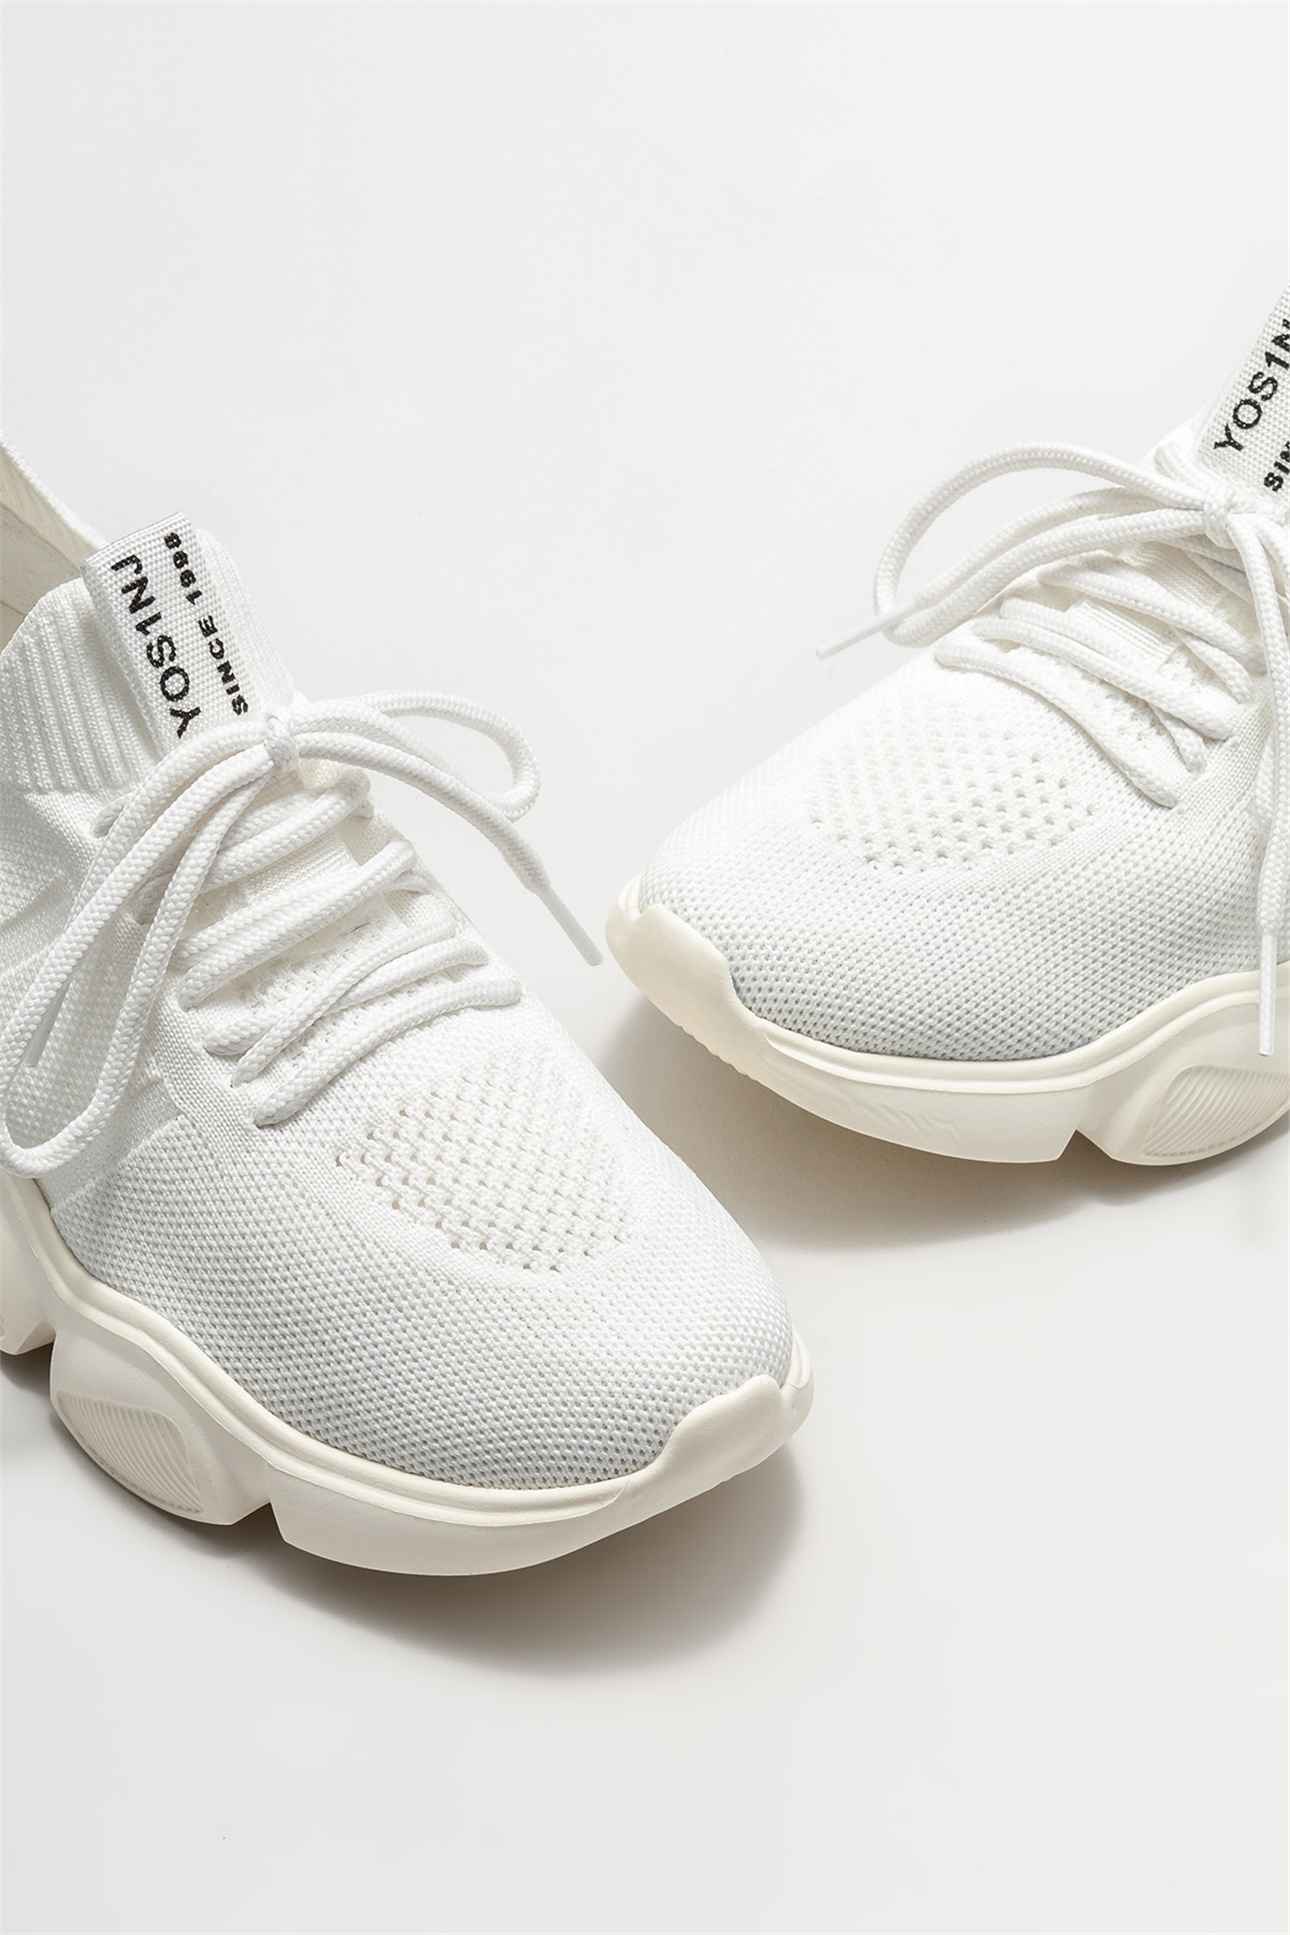 Beyaz Kadın Spor Ayakkabı Satın Al! ALURA-1-02 Fiyatı | Elle Shoes